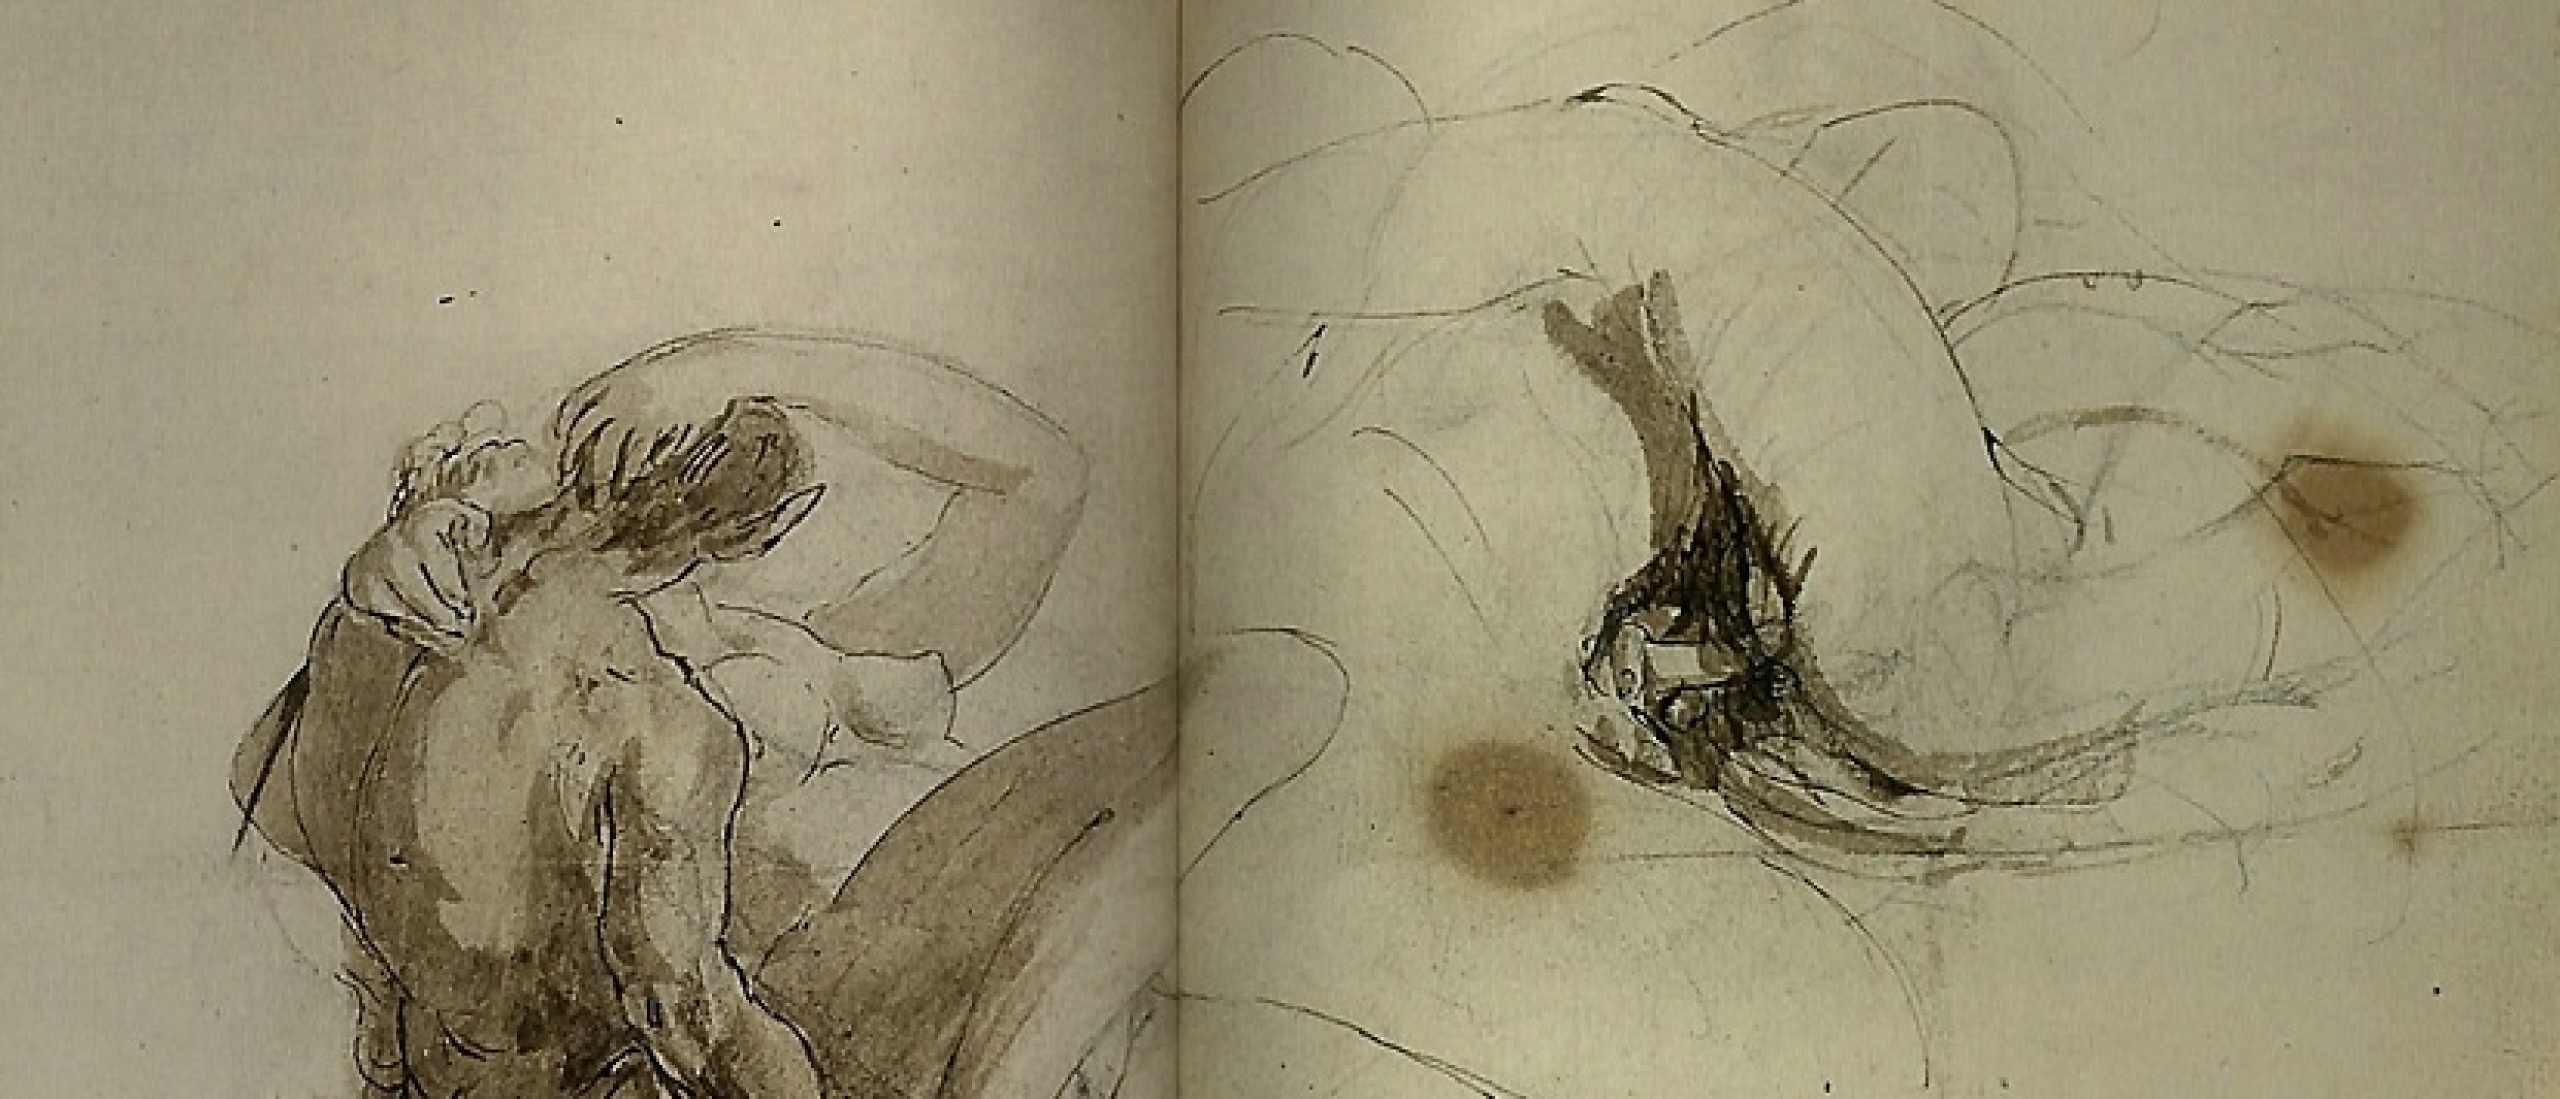 Erotic Landscapes: Turner's Secret Sketches